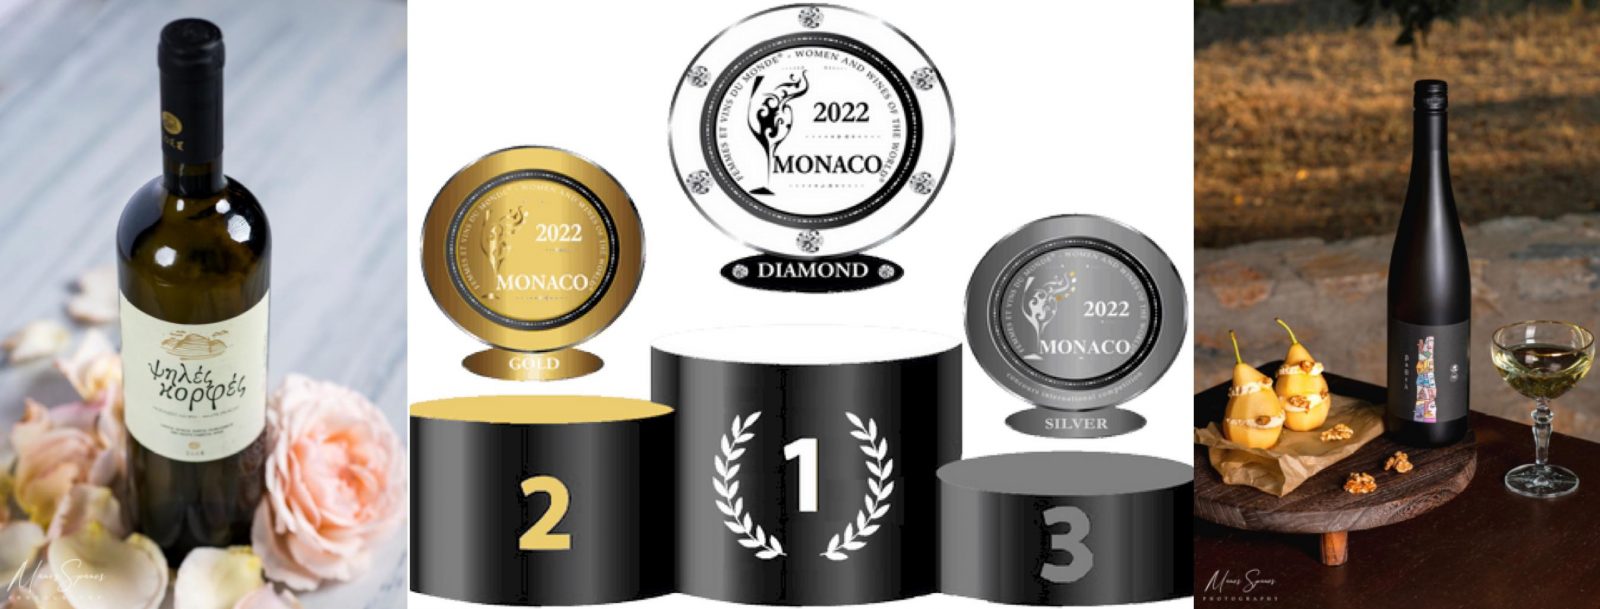 Δύο “διαμαντένια” βραβεία για κρασιά του ΕΟΣ Σάμου σε διαγωνισμό στο Μονακό!